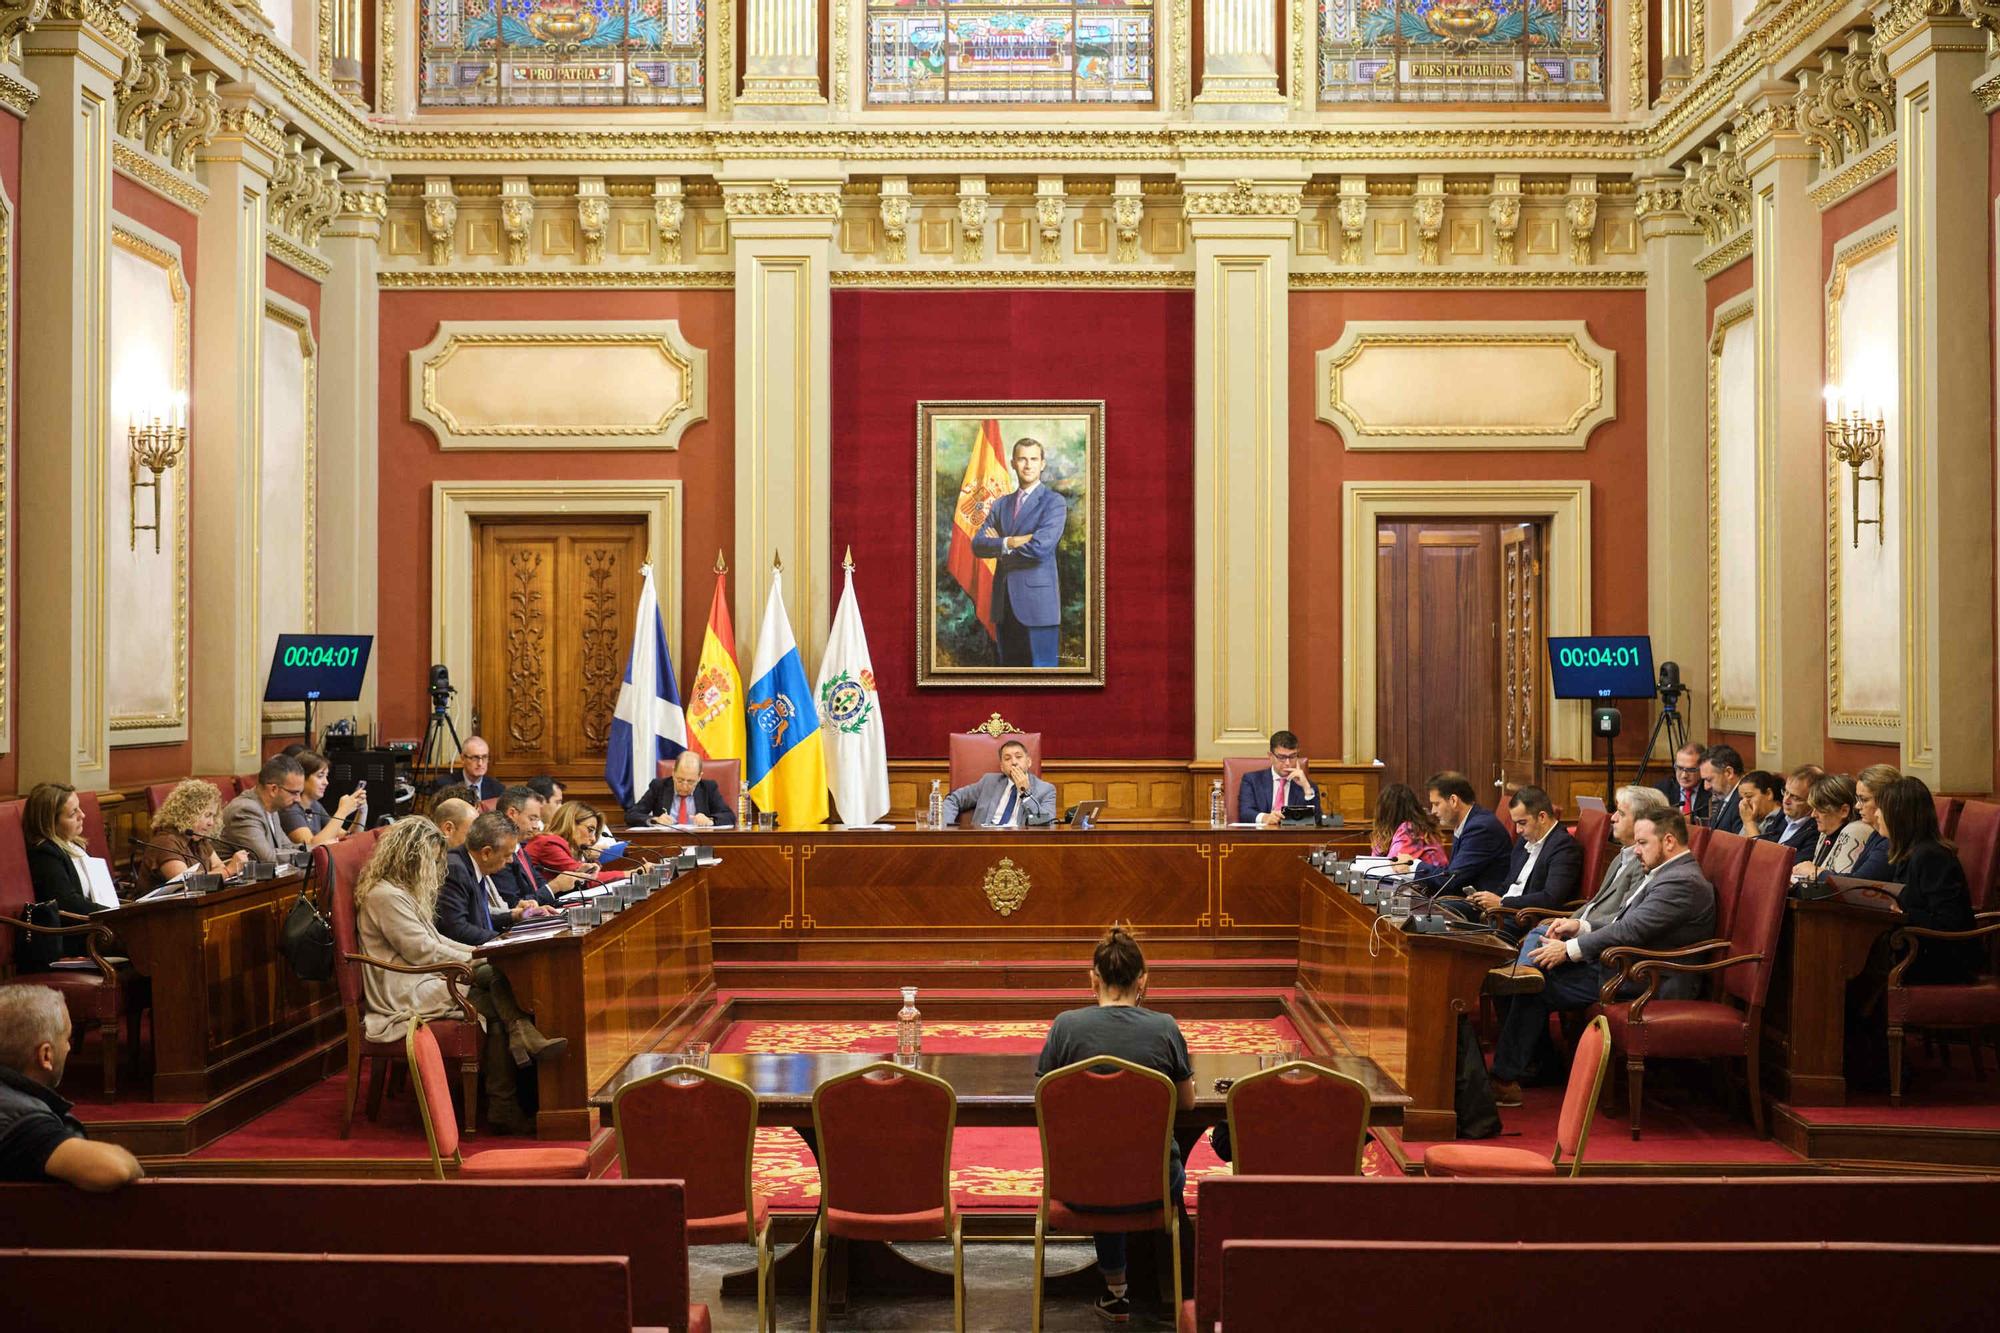 Pleno presupuestos en el Ayuntamiento de Santa Cruz de Tenerife